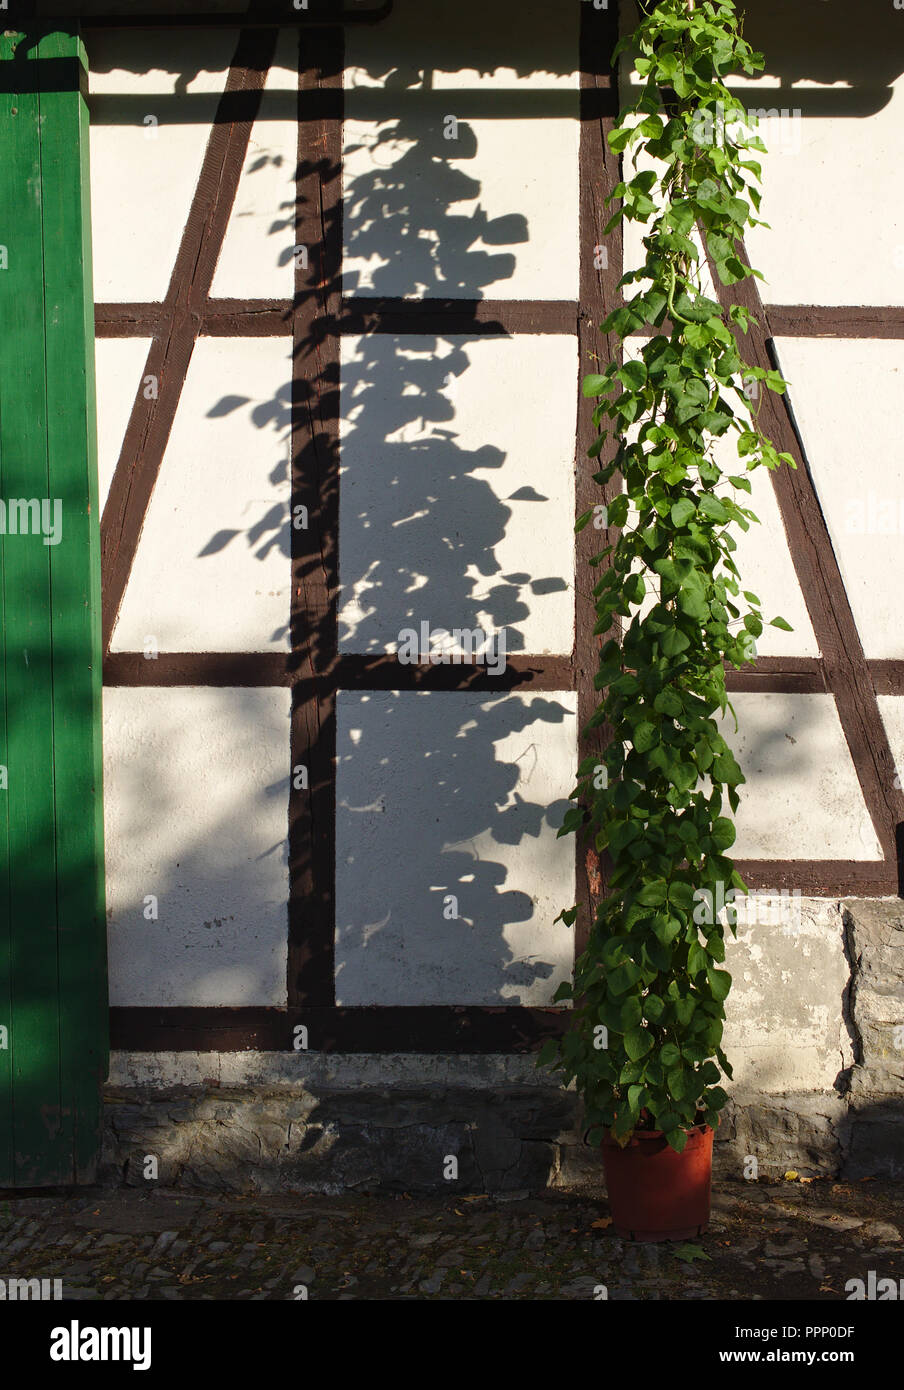 Viticci verde illuminato dal sole di sera cast un vivace ombra su un bianco a struttura mista in legno e muratura della parete edilizia Foto Stock